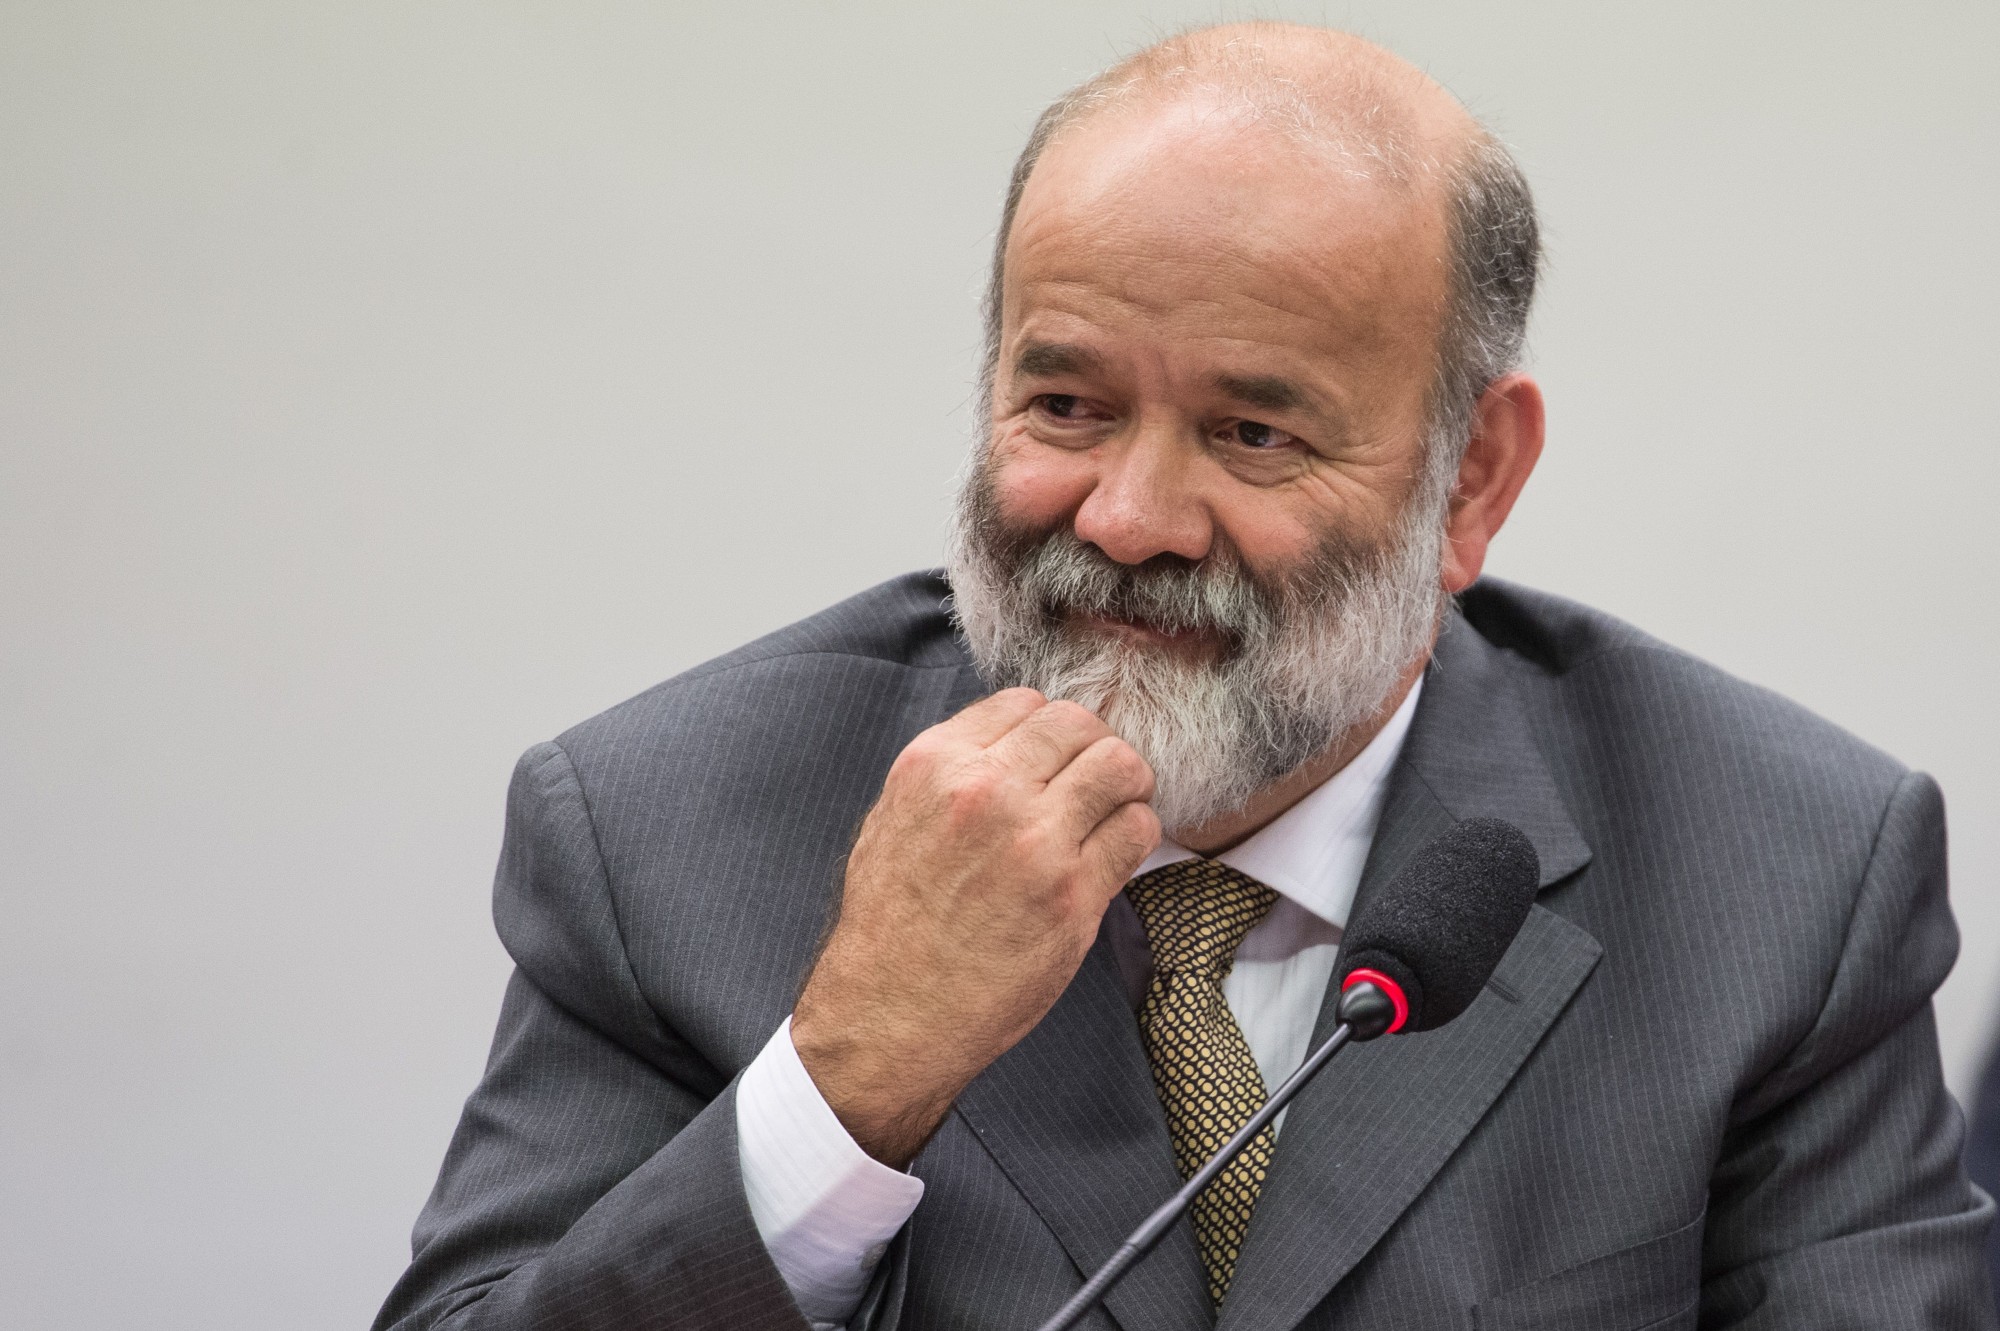 Ruling Party Treasurer Arrested in Corruption Scandal in Brazil